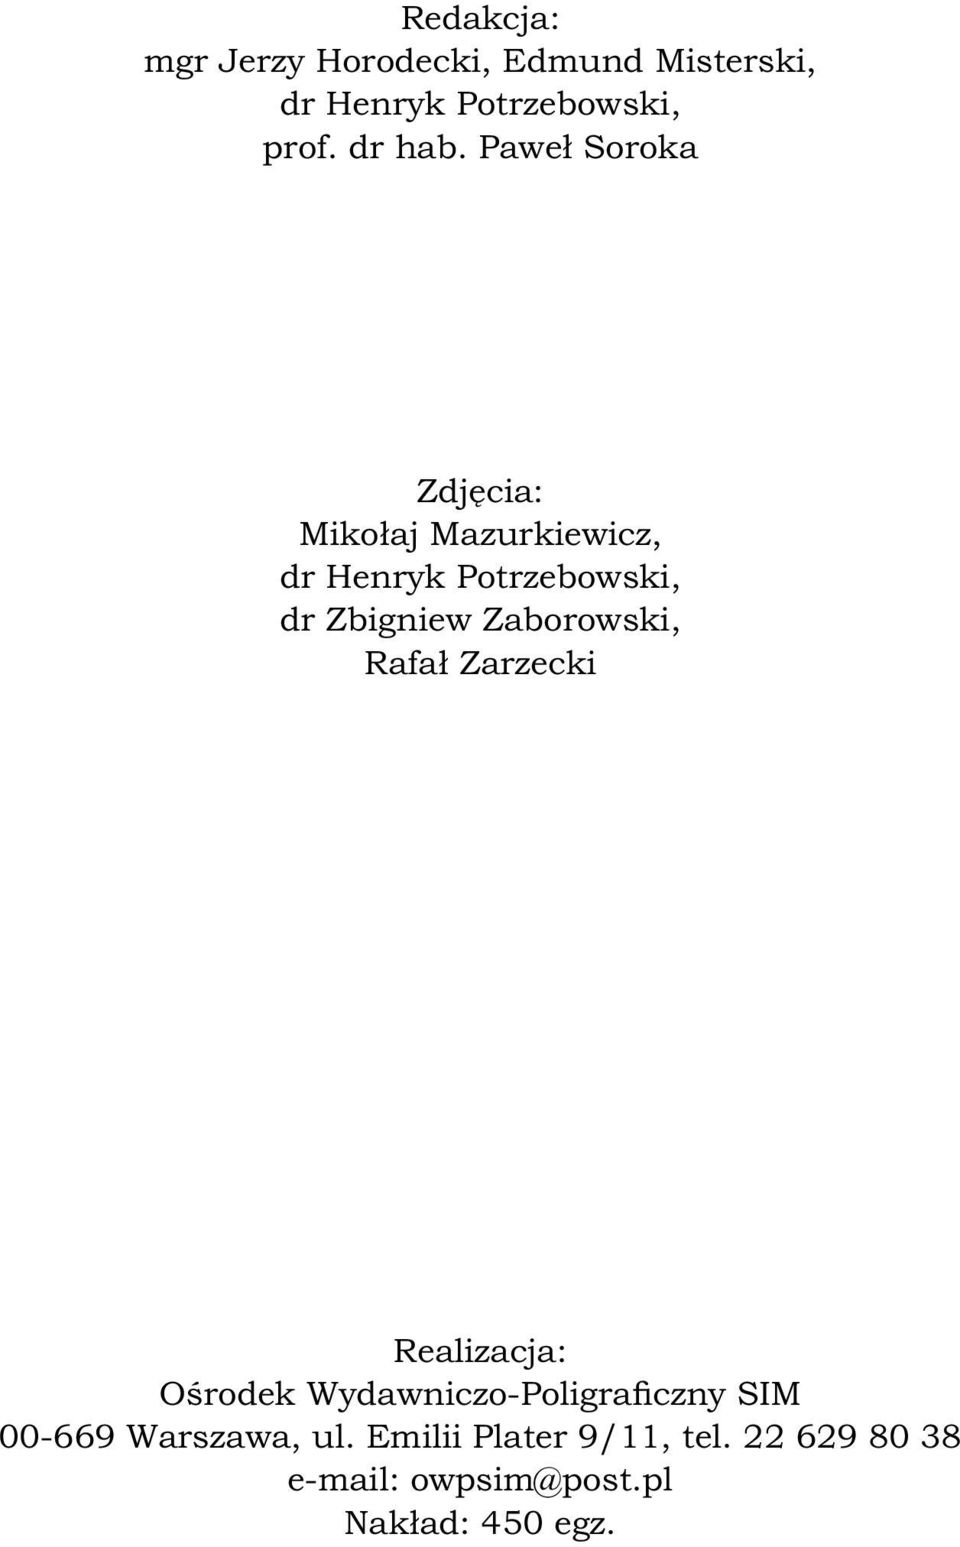 Zaborowski, Rafał Zarzecki Realizacja: Ośrodek Wydawniczo-Poligraficzny SIM 00-669